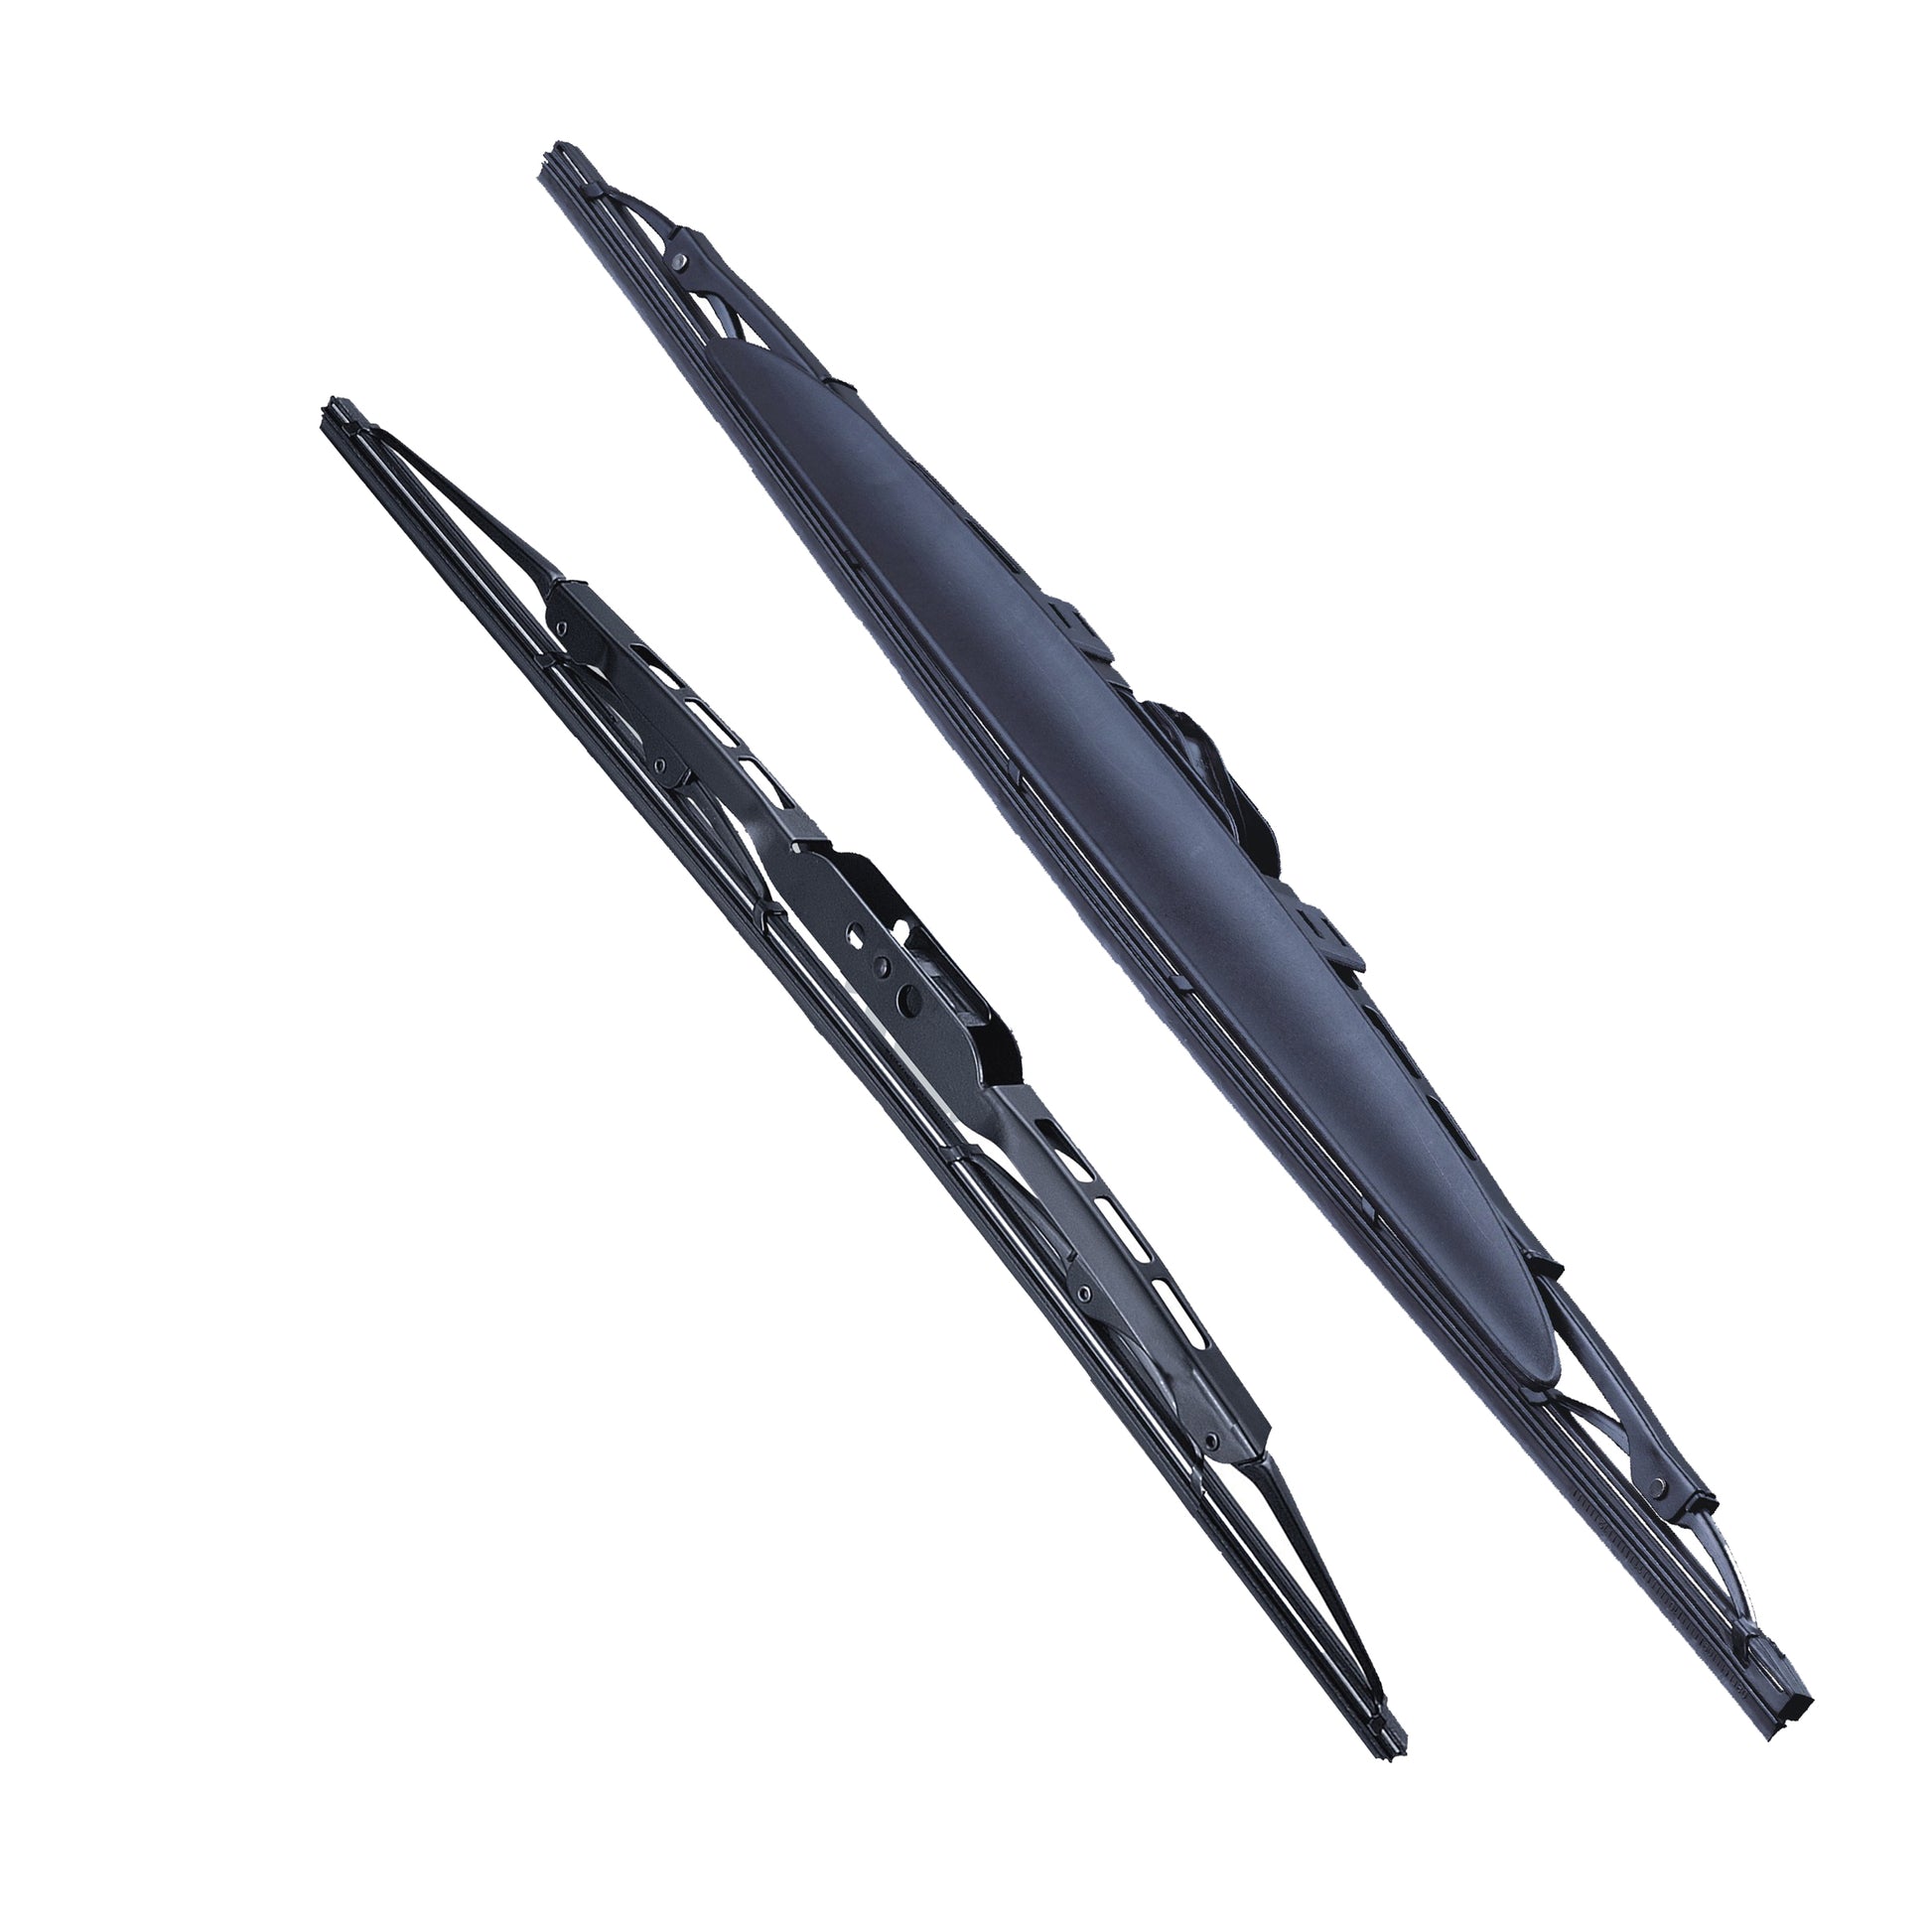 SUZUKI CELERIO Hatchback Mar 2014 to Apr 2020 Wiper Blade Kit